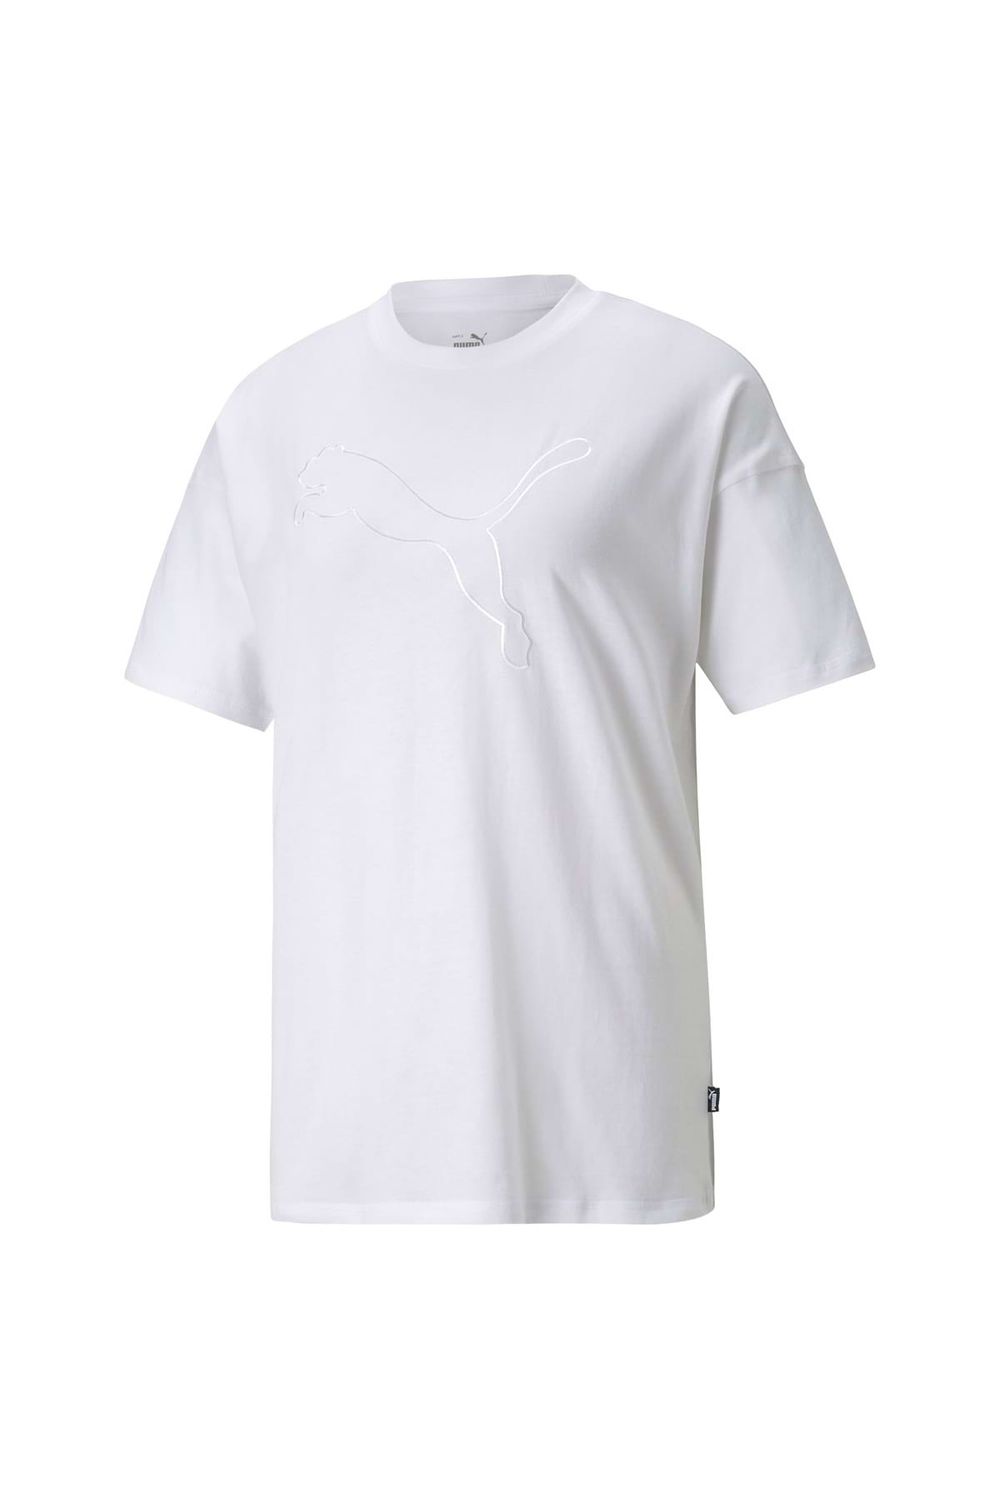 Puma Damen T-Shirt - HER Rundhals, uni Logo, Tee, Kurzarm, Trendyol 